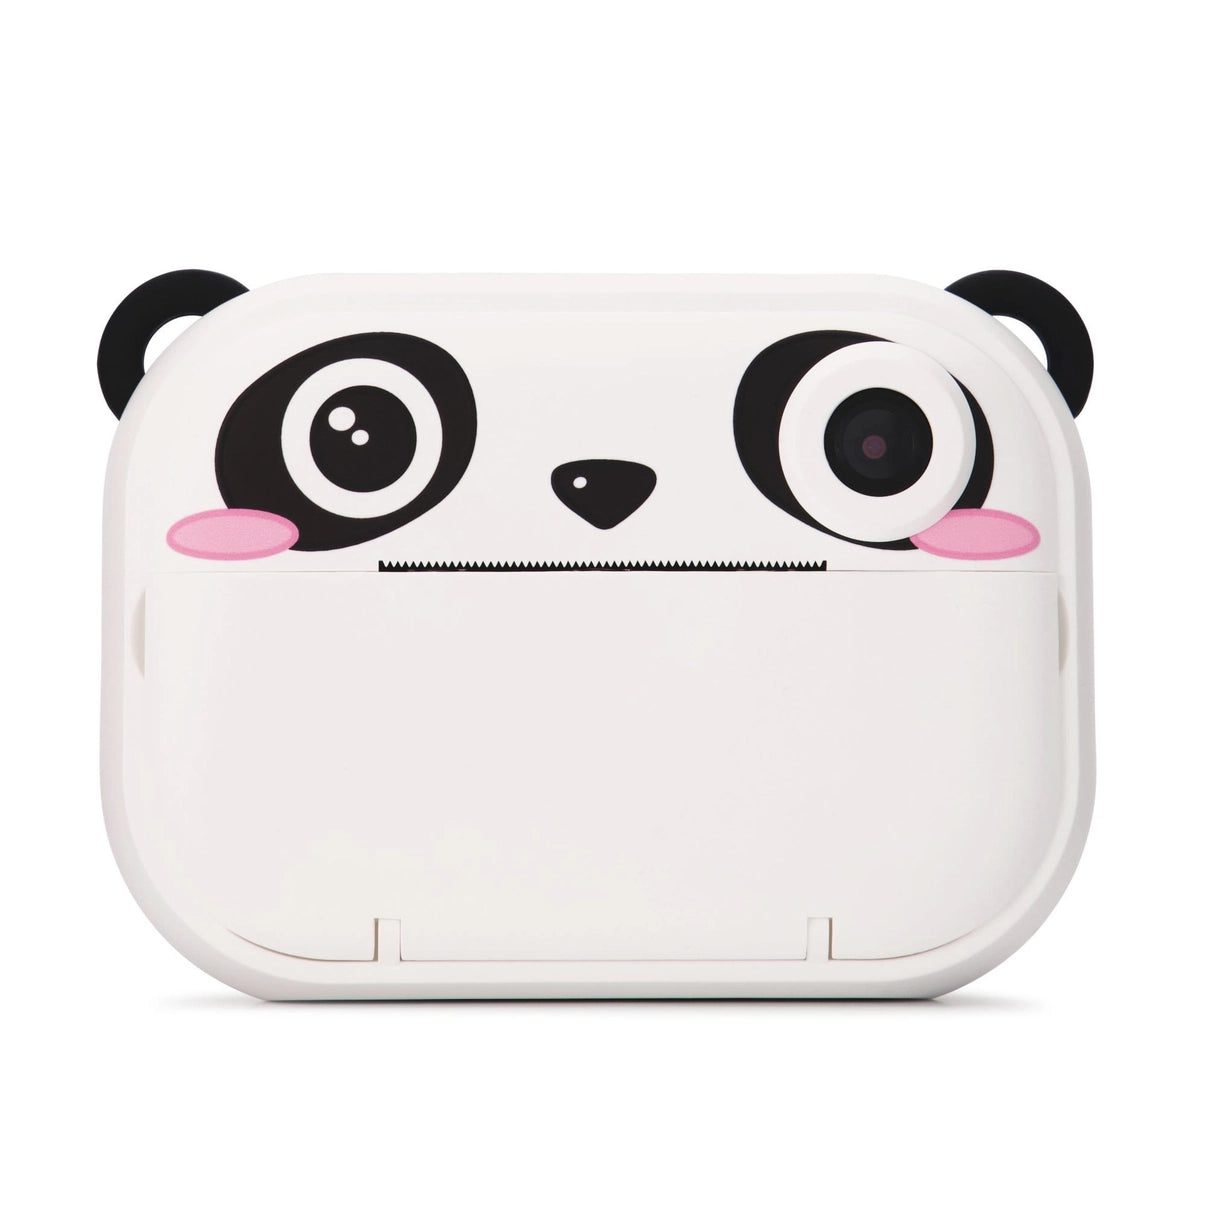 Home - Gadget Panda